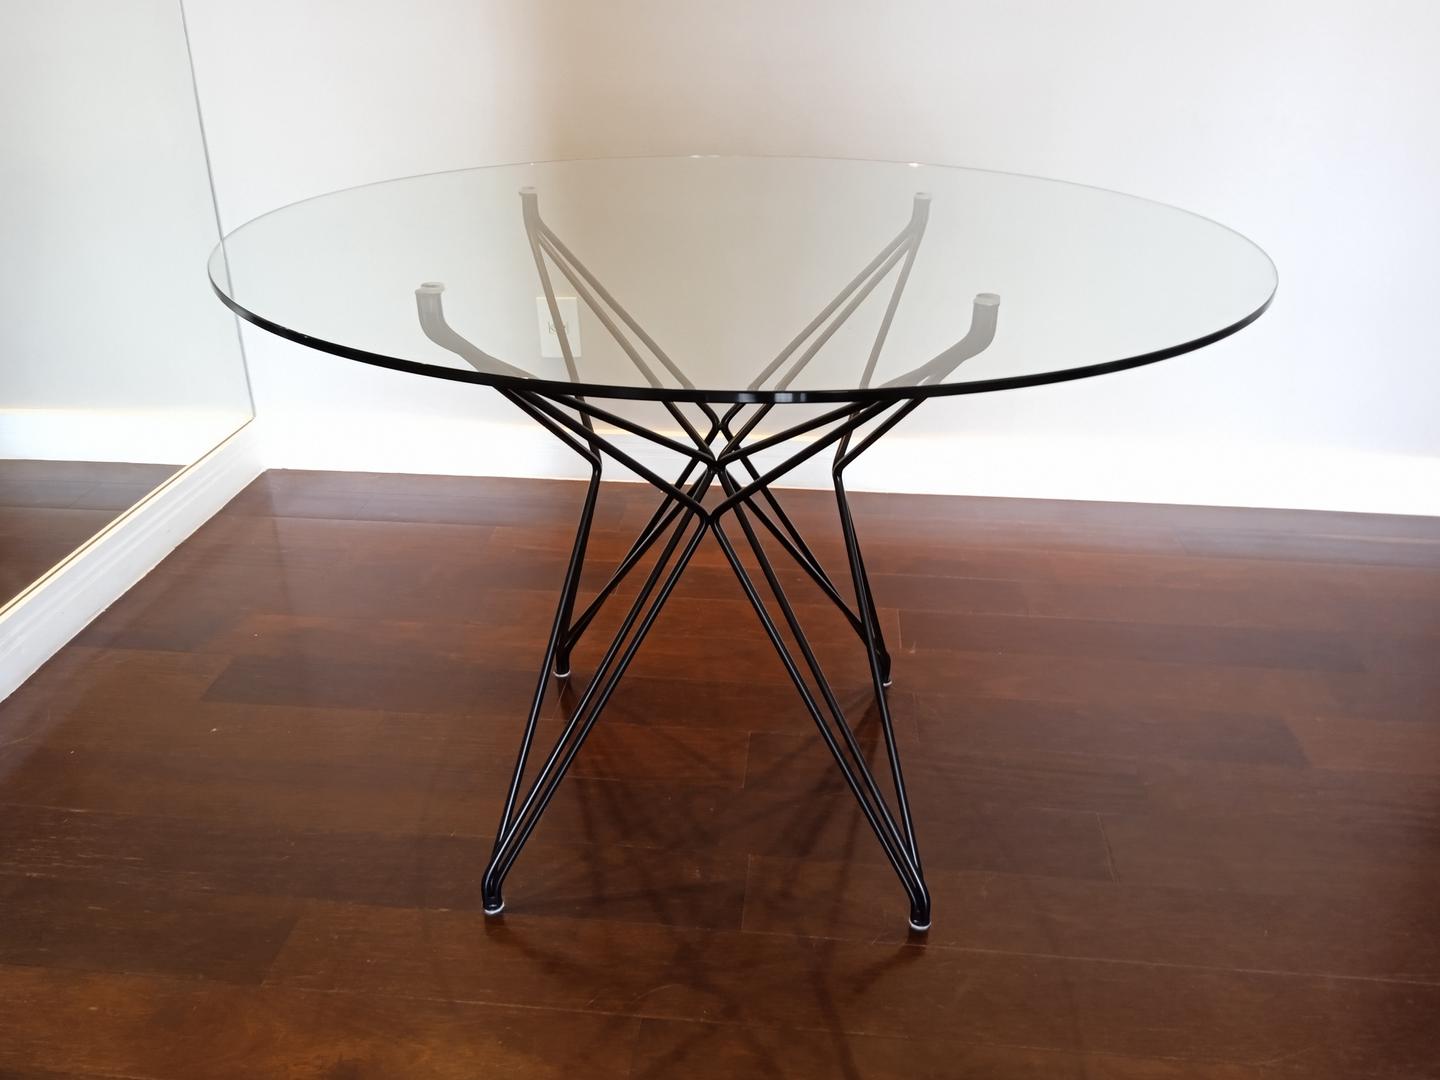 Mesa de jantar em Aço / Vidro Cinza 75 cm x 110 cm x 110 cm